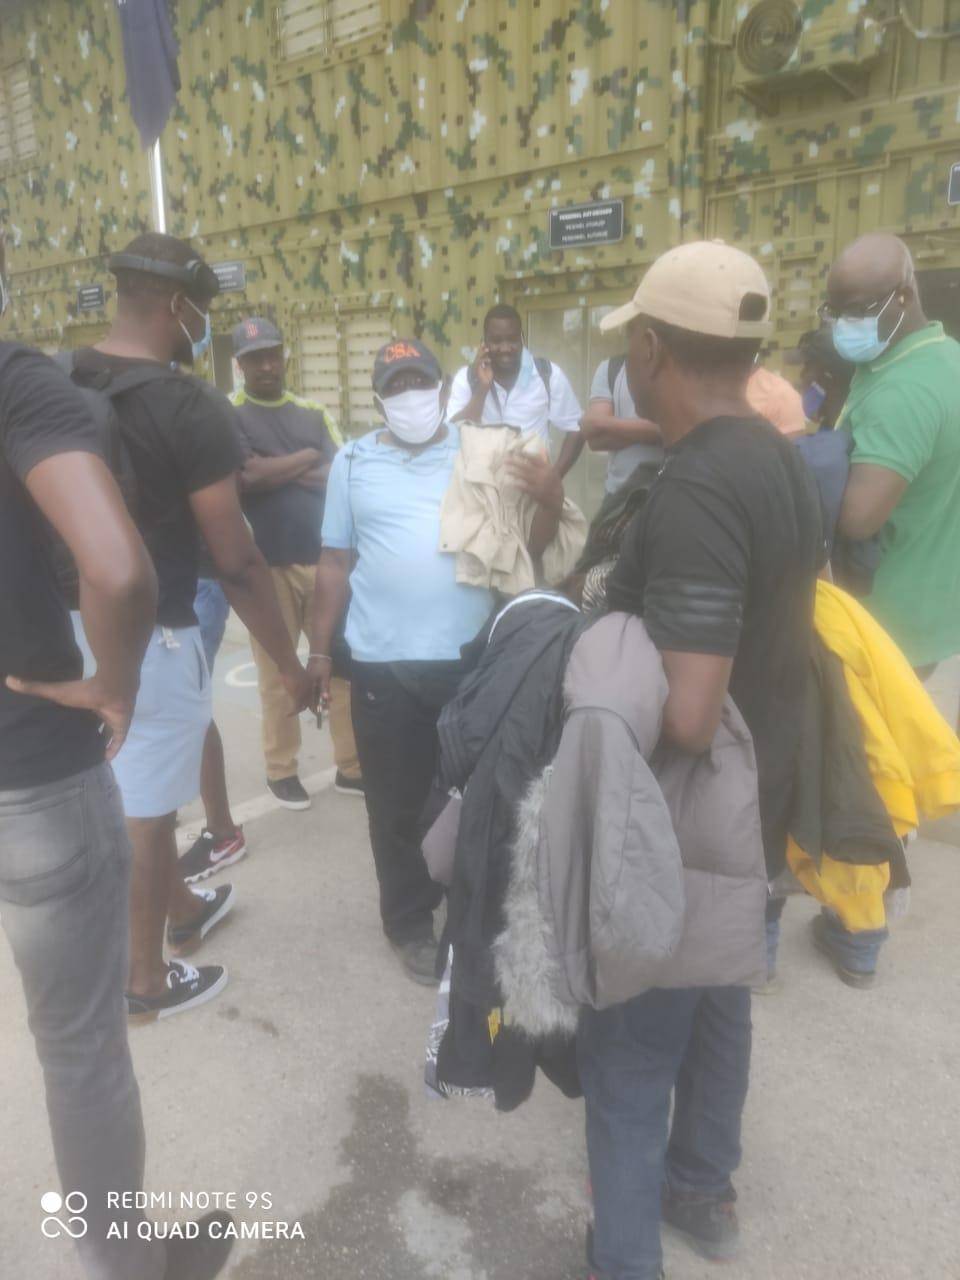 Cierran puerta binacional Carrizal-Elías Piña por manifestaciones en Haití